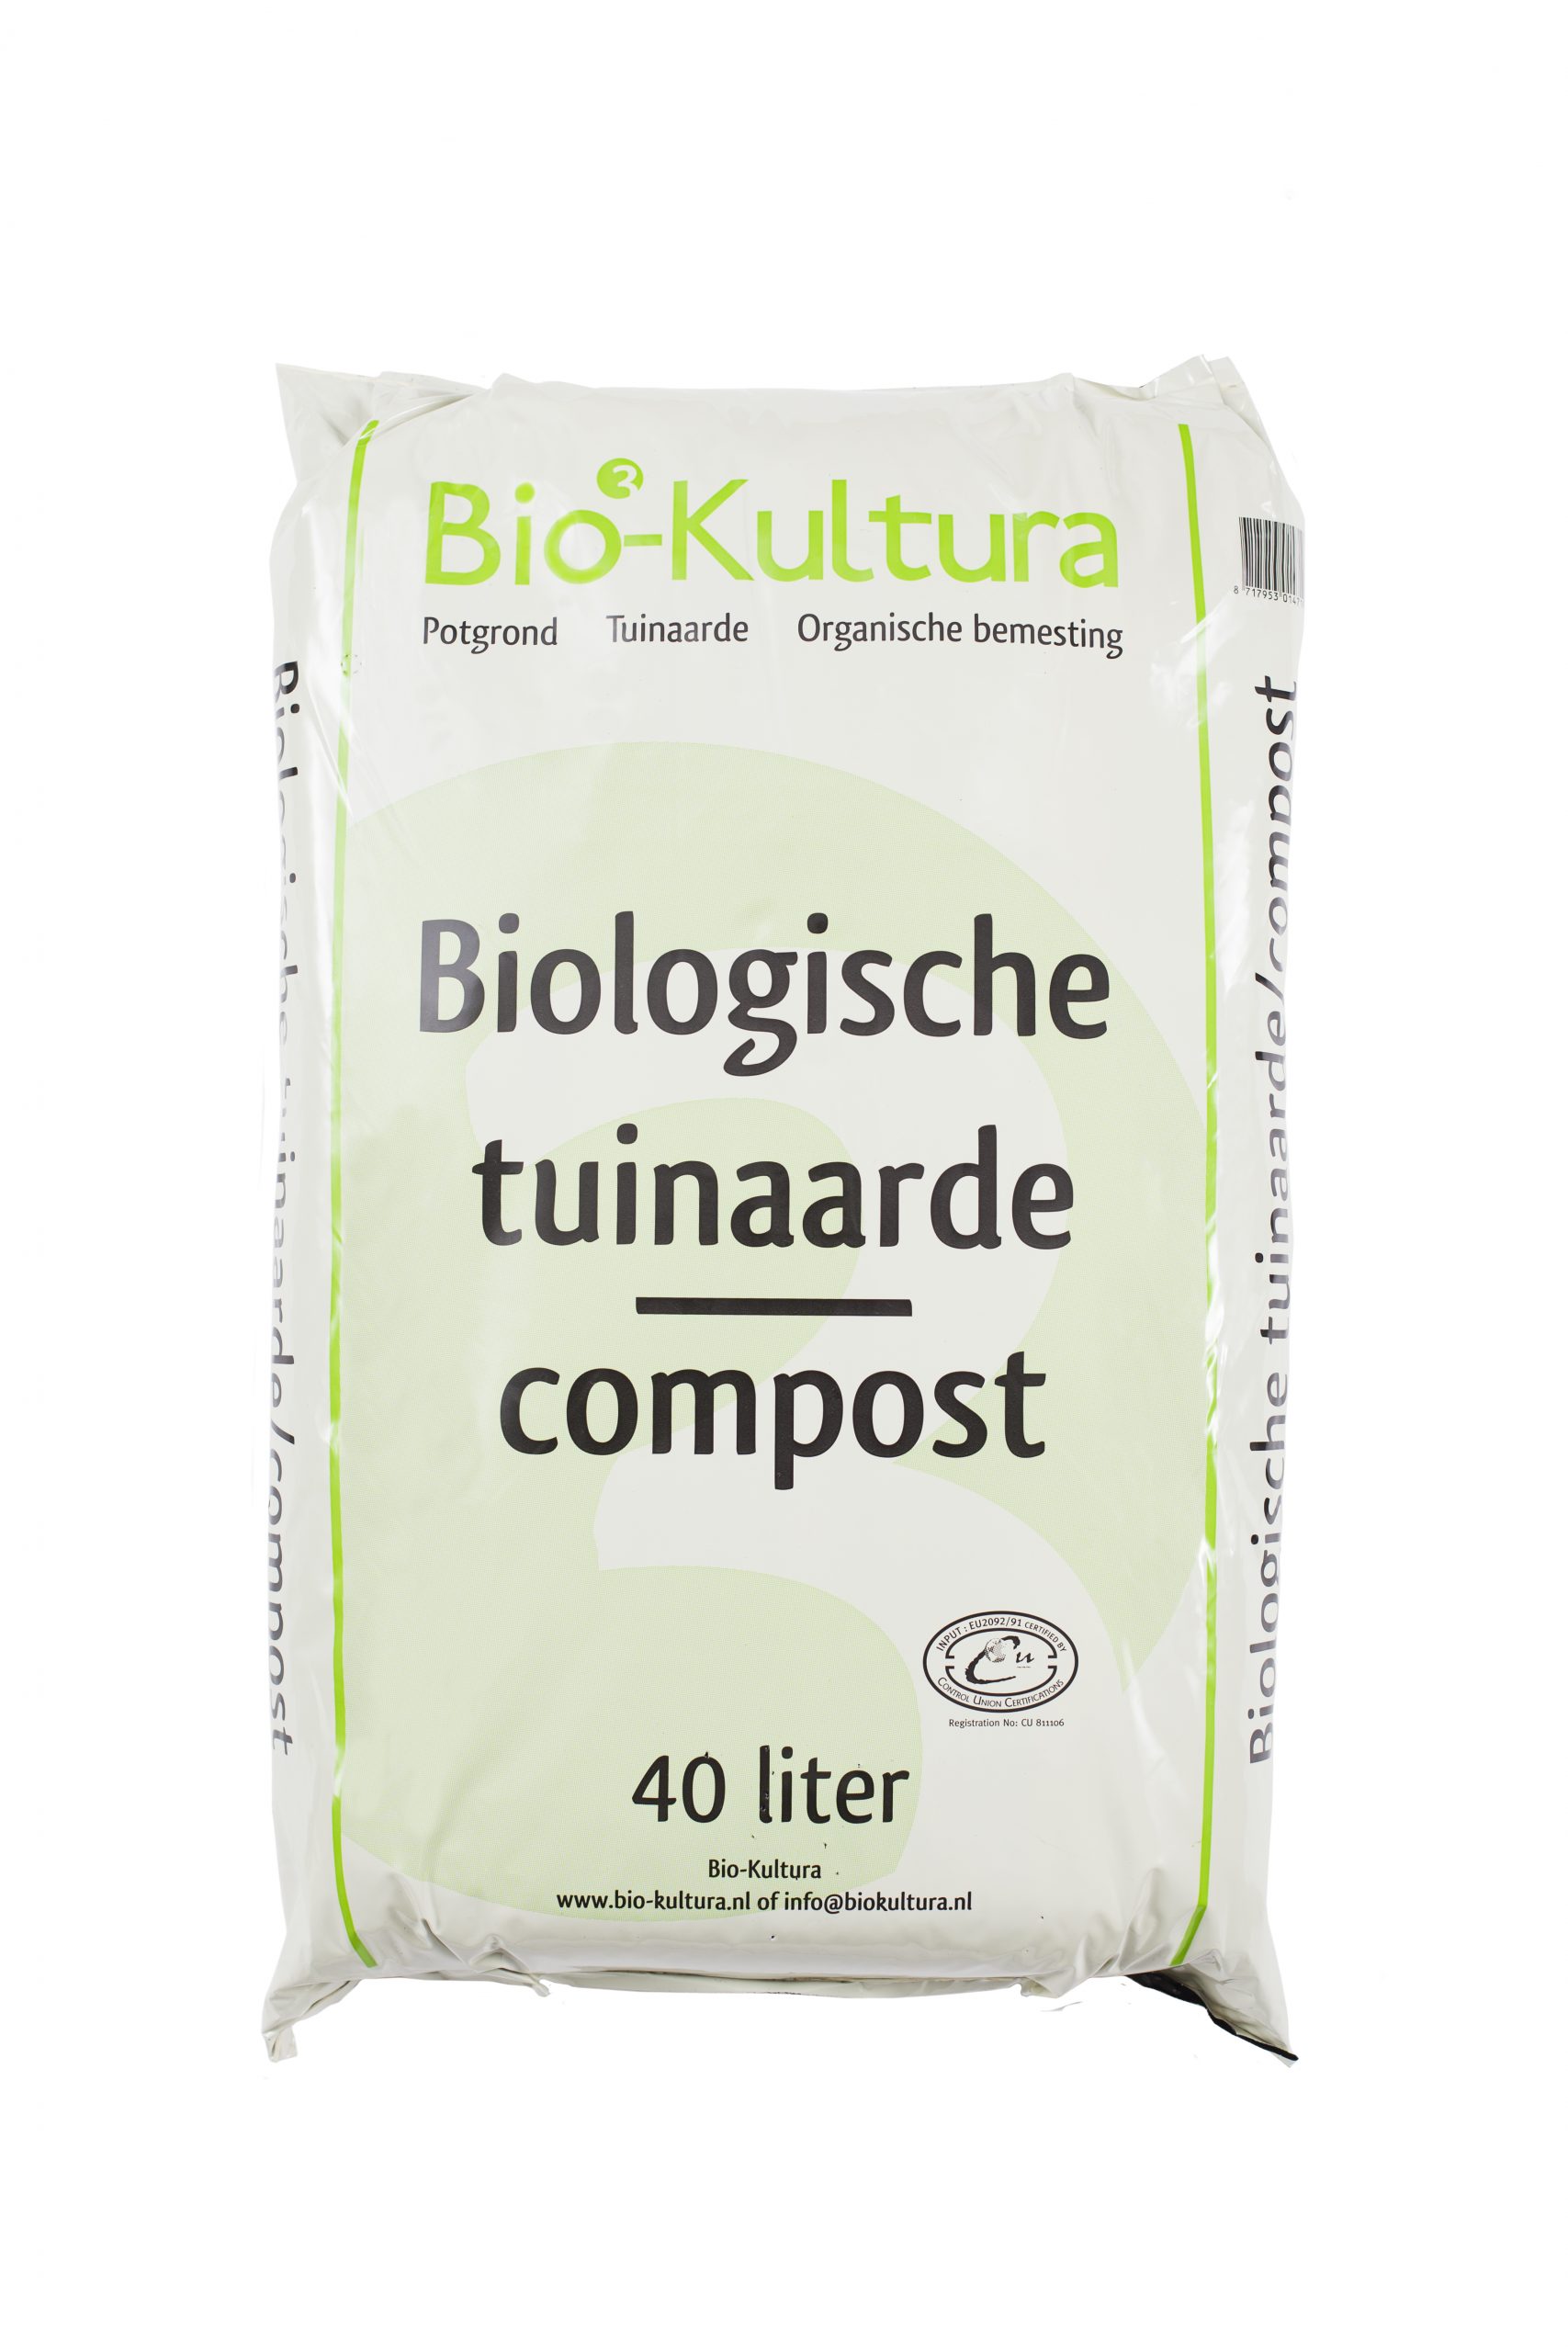 Biologische tuinaarde van Bio-Kultura is een hoogwaardige